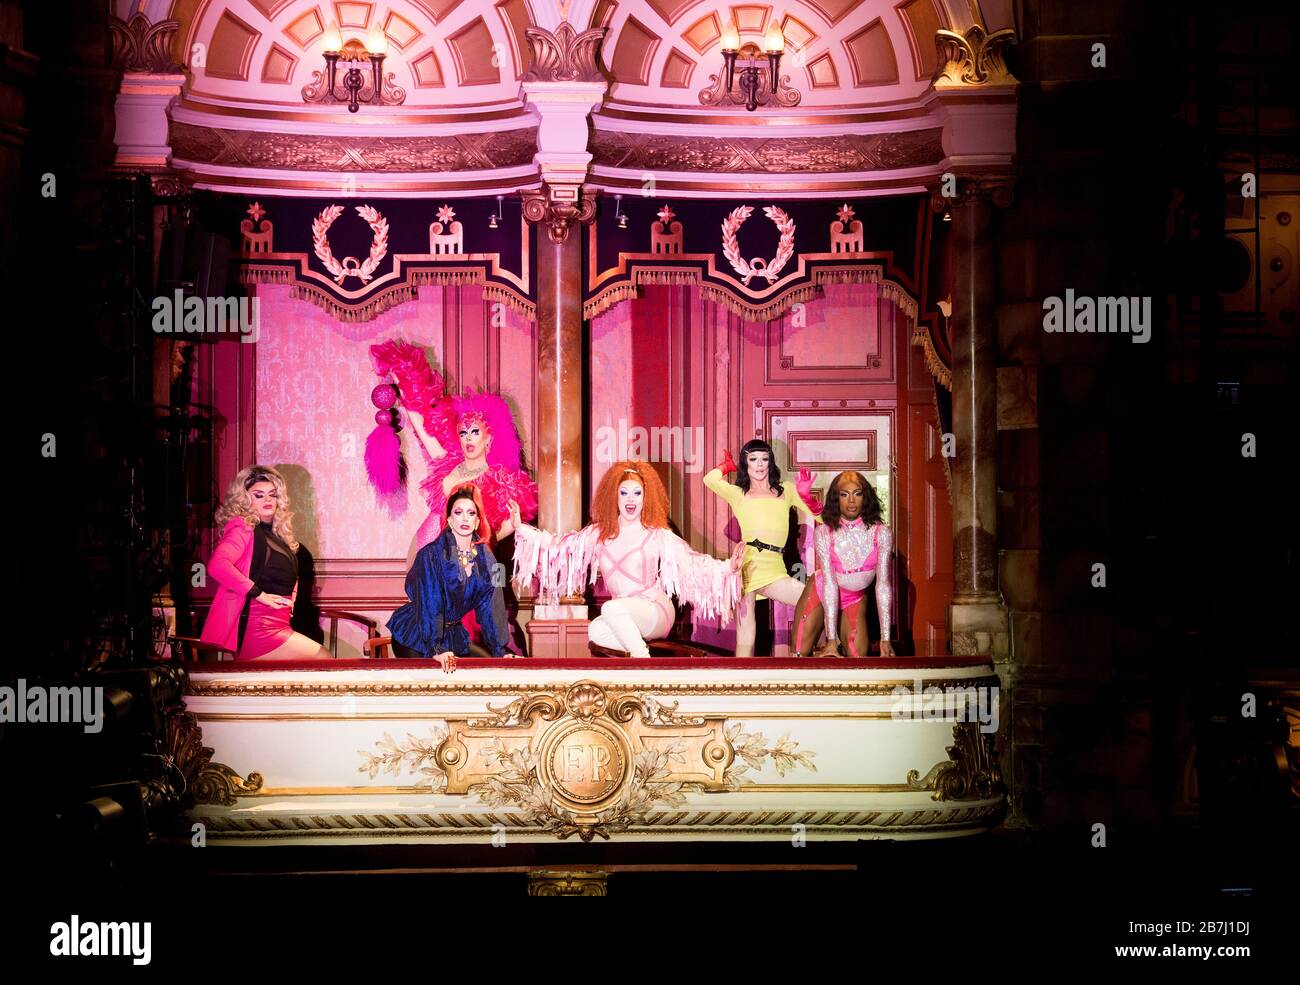 Kitty Scott Claus, Divine de campo, Meth, Poppycock Miele Foxx e Baby sono visti a una chiamata fotografica per lanciare drag Live!. Lo spettacolo "drag variety" si svolge presso il London Coliseum il 5 aprile a Londra. Foto Stock